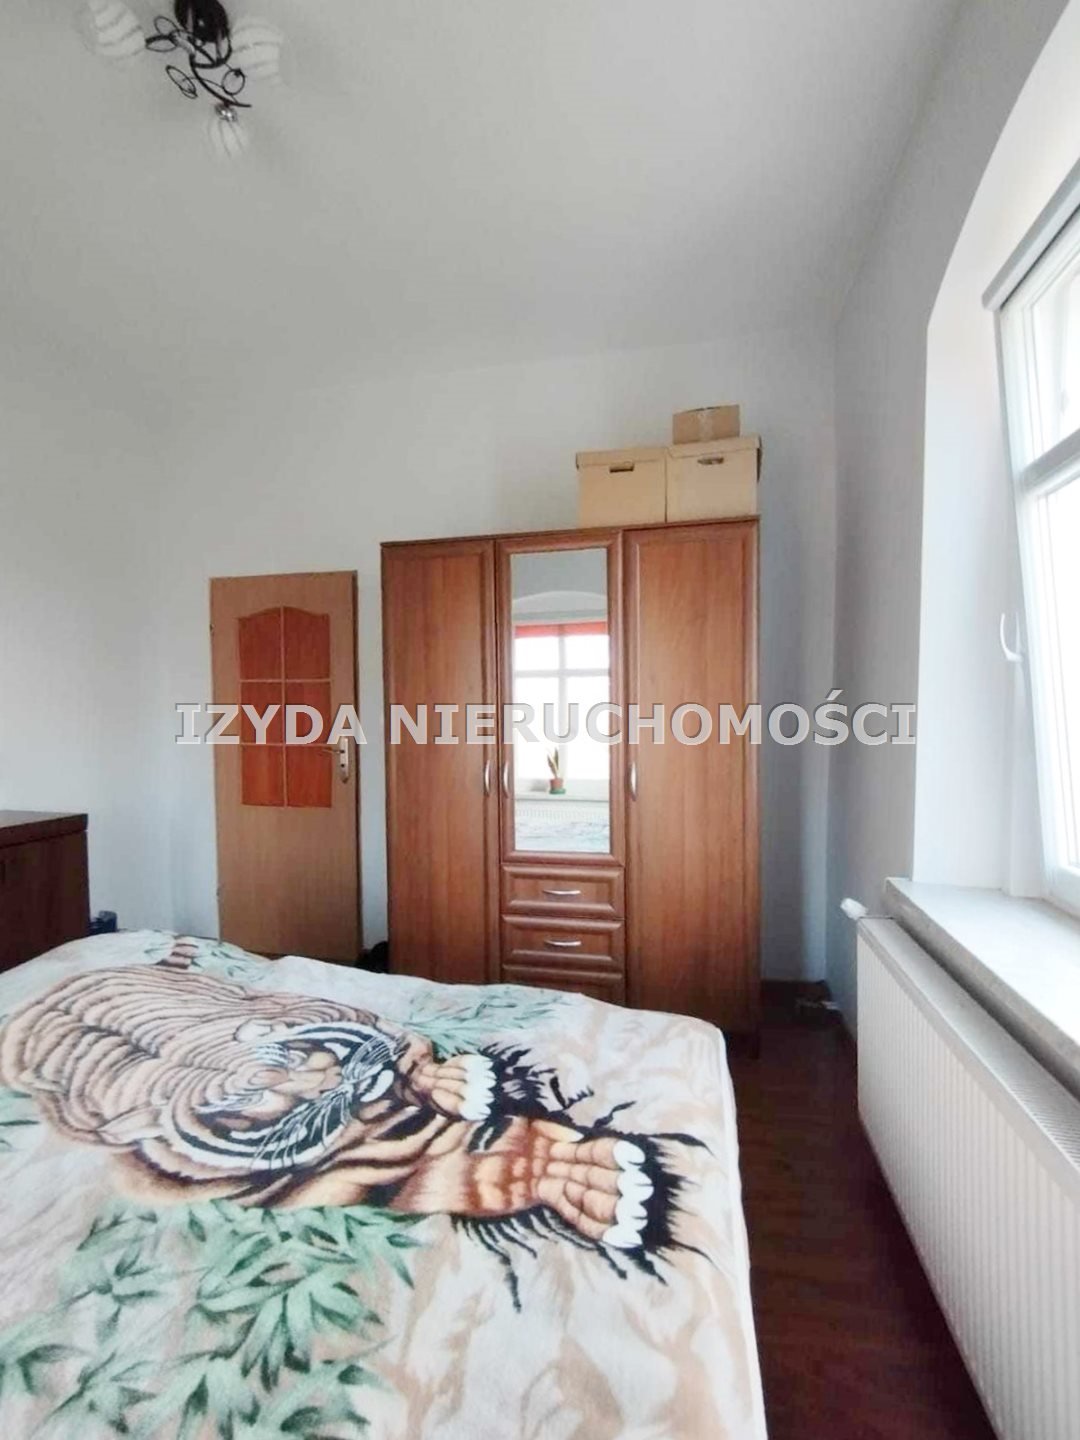 Mieszkanie trzypokojowe na sprzedaż Marcinowice  80m2 Foto 7